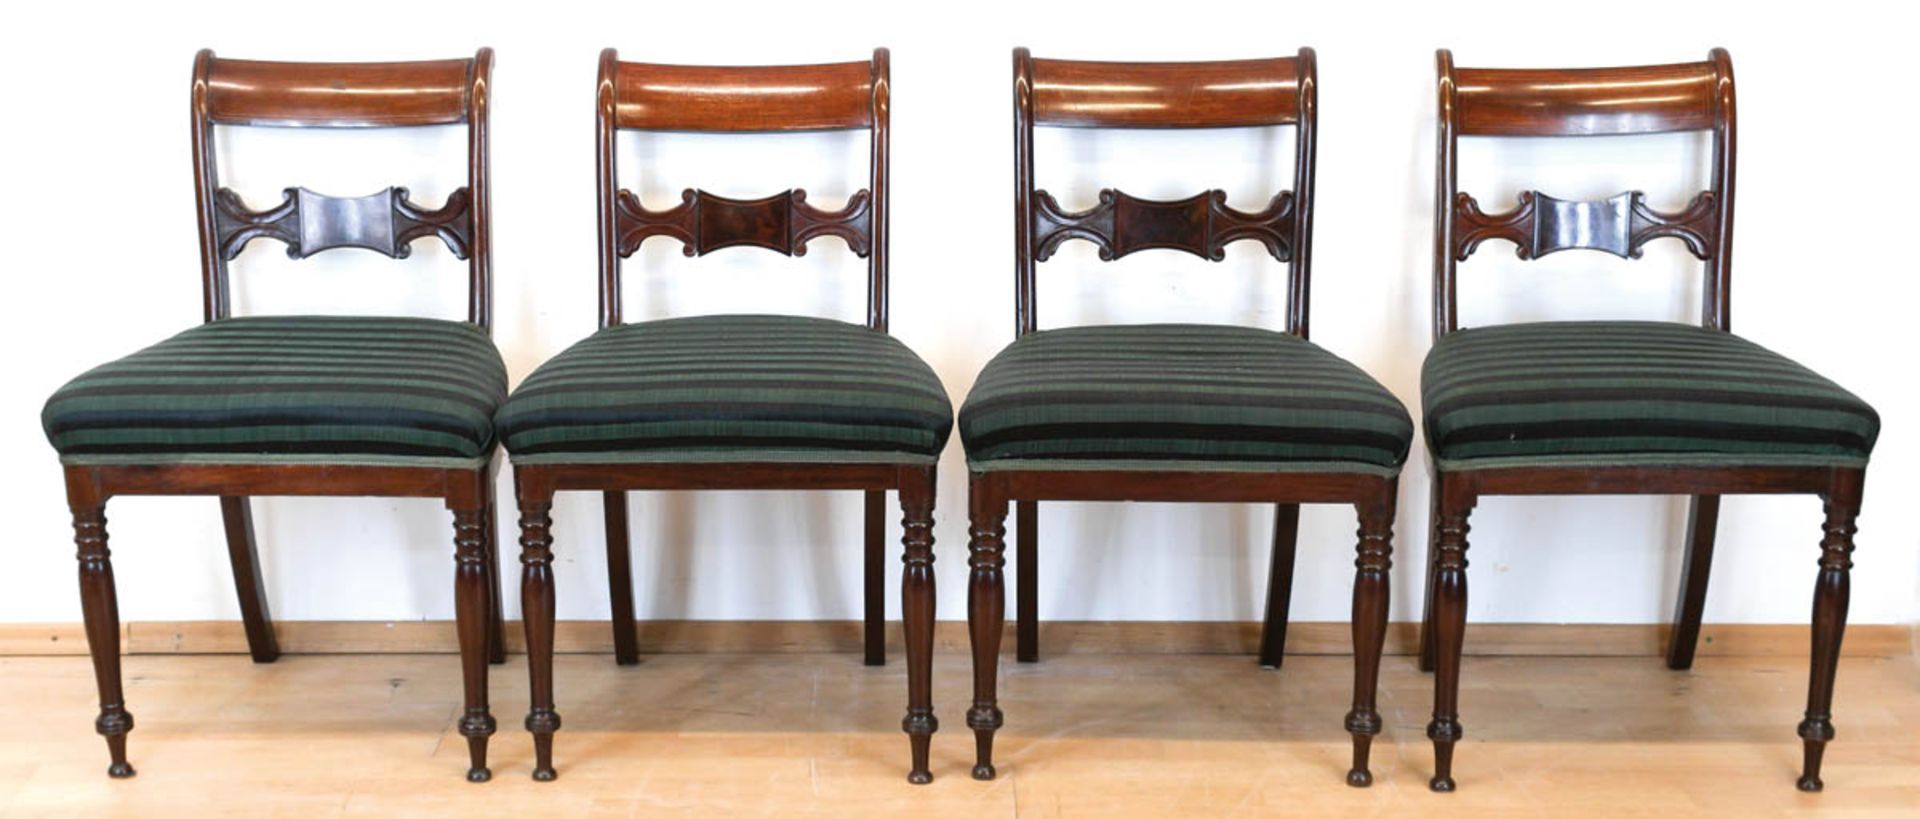 4 Biedermeier-Stühle, norddeutsch, Mahagoni, furniert, Fadenintarsiengepolsterter Sitz mitgrün/